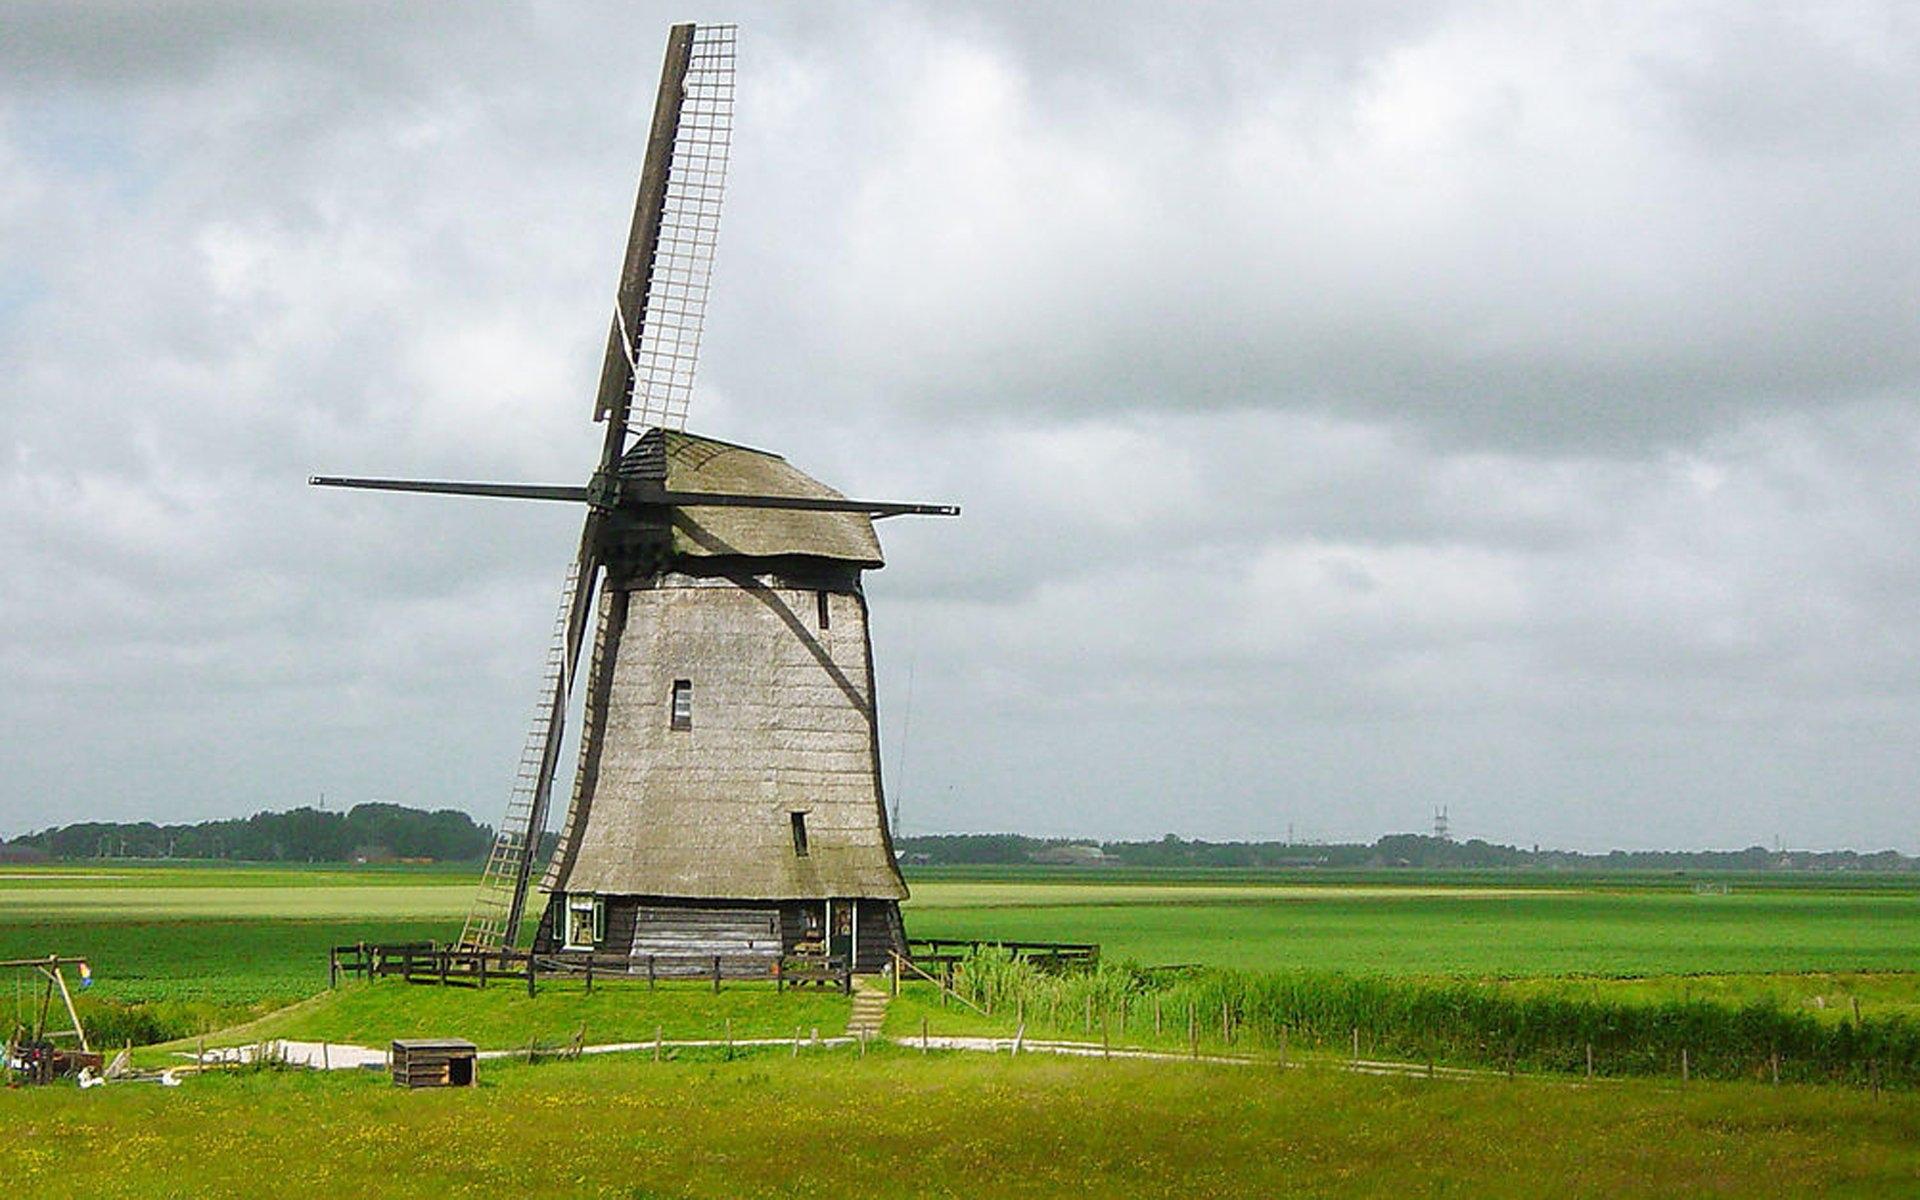 荷兰 风车村 风车 历史图片下载 - 觅知网